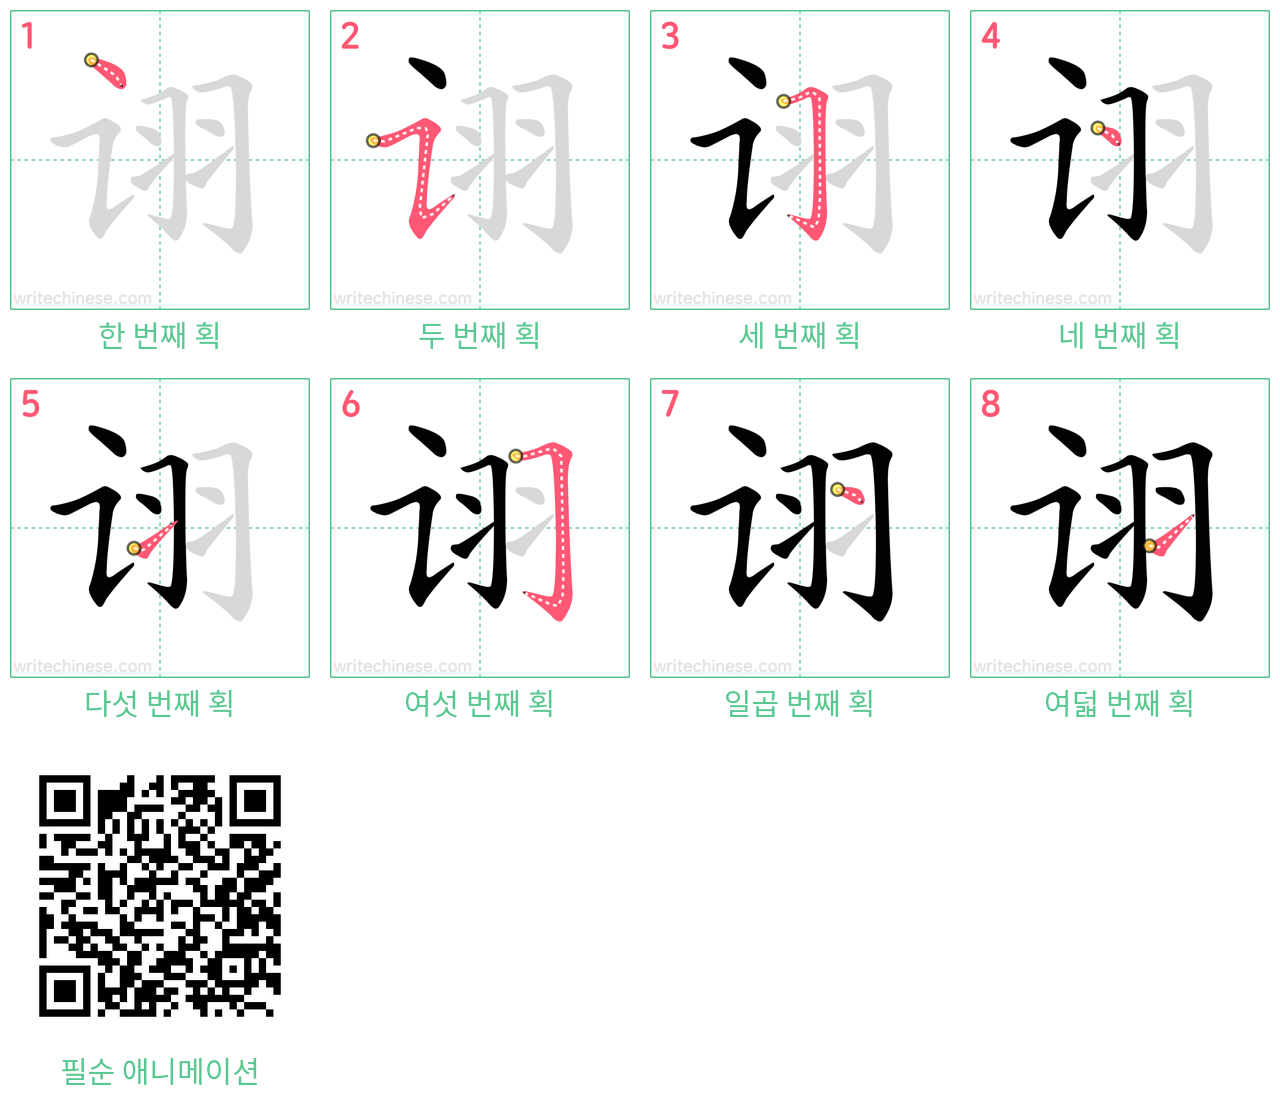 诩 step-by-step stroke order diagrams